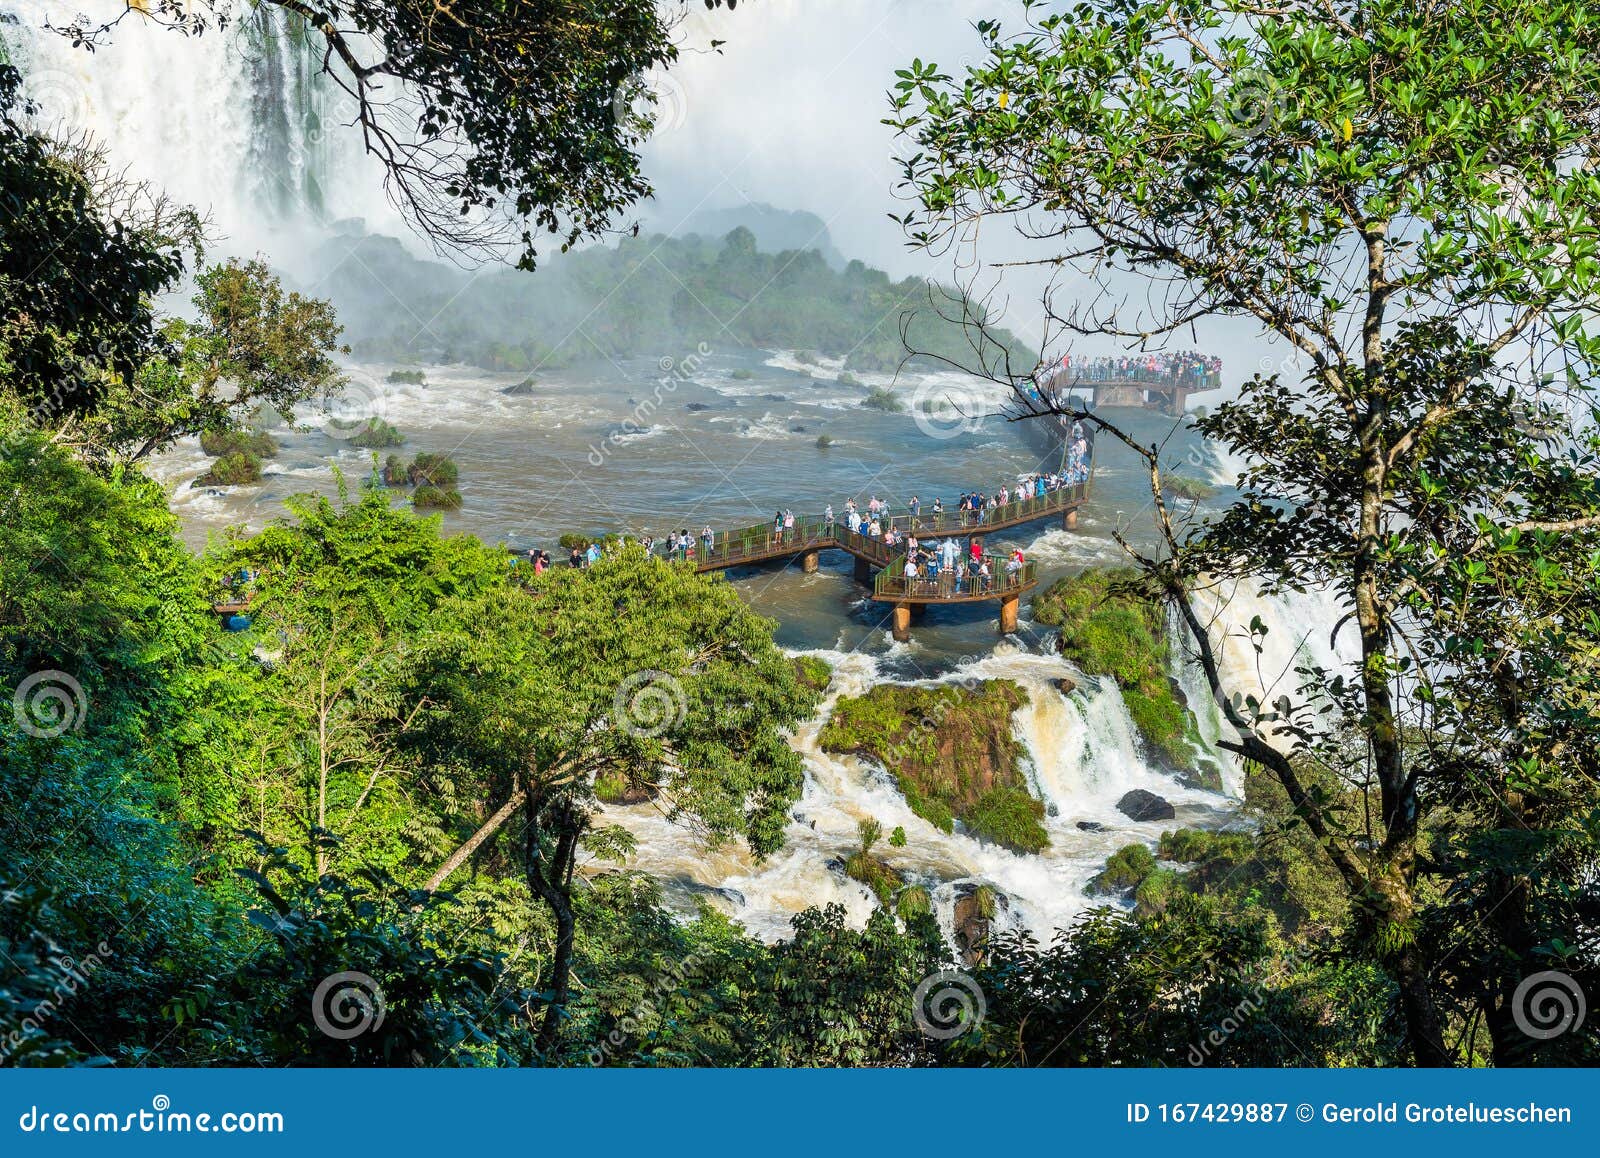 waterfalls cataratas foz de iguazu, brazil